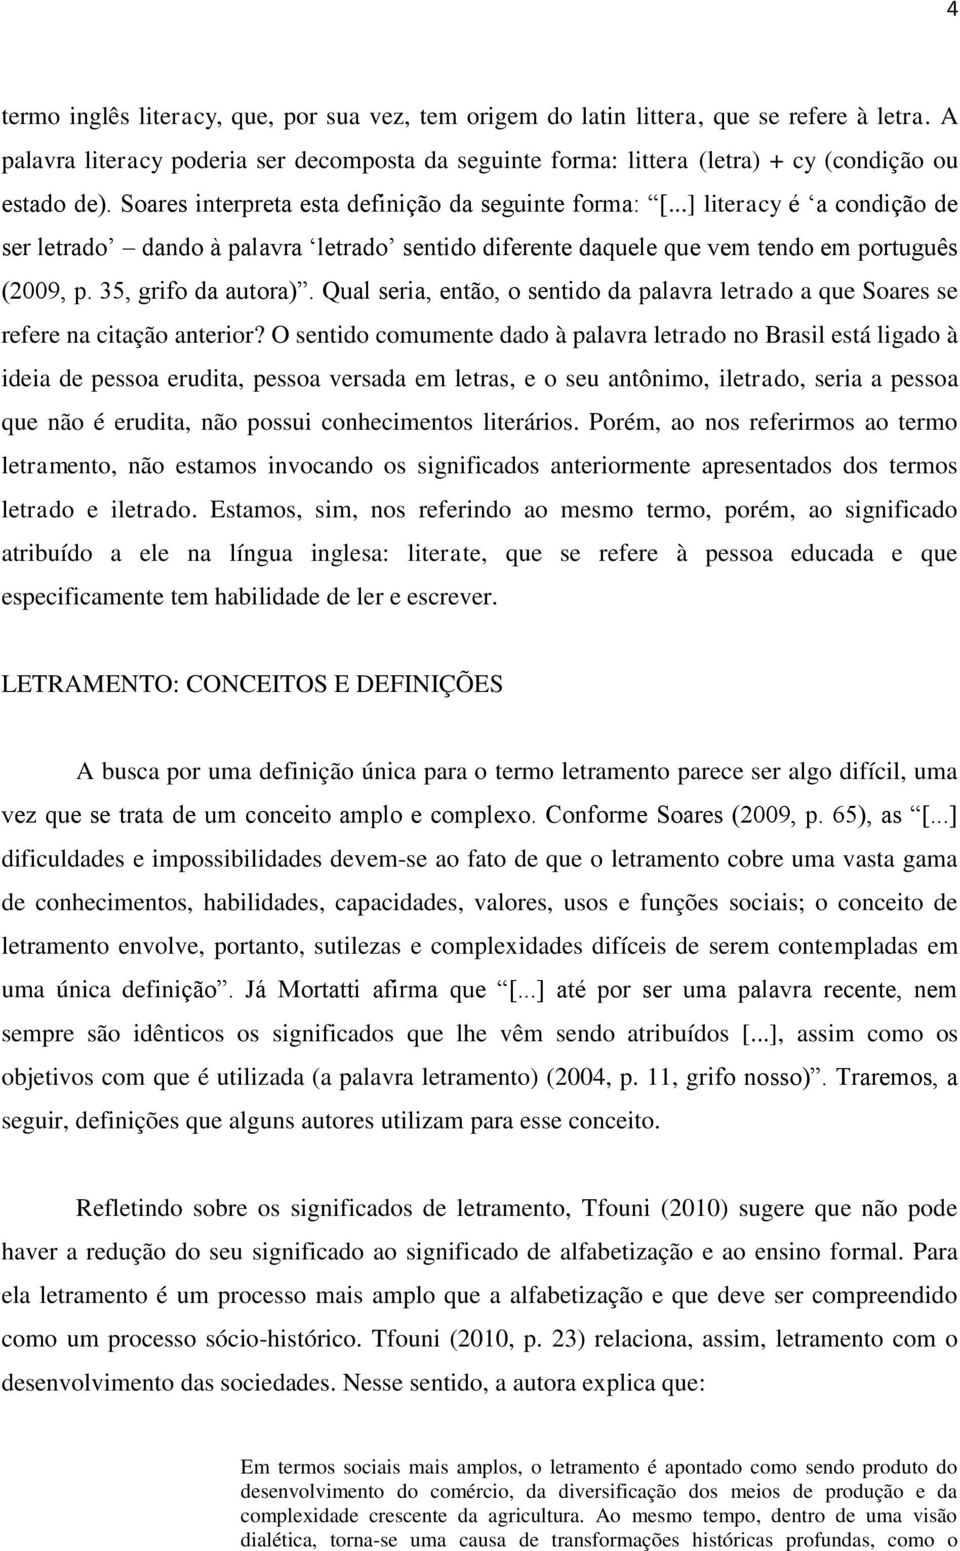 ..] literacy é a condição de ser letrado dando à palavra letrado sentido diferente daquele que vem tendo em português (2009, p. 35, grifo da autora).